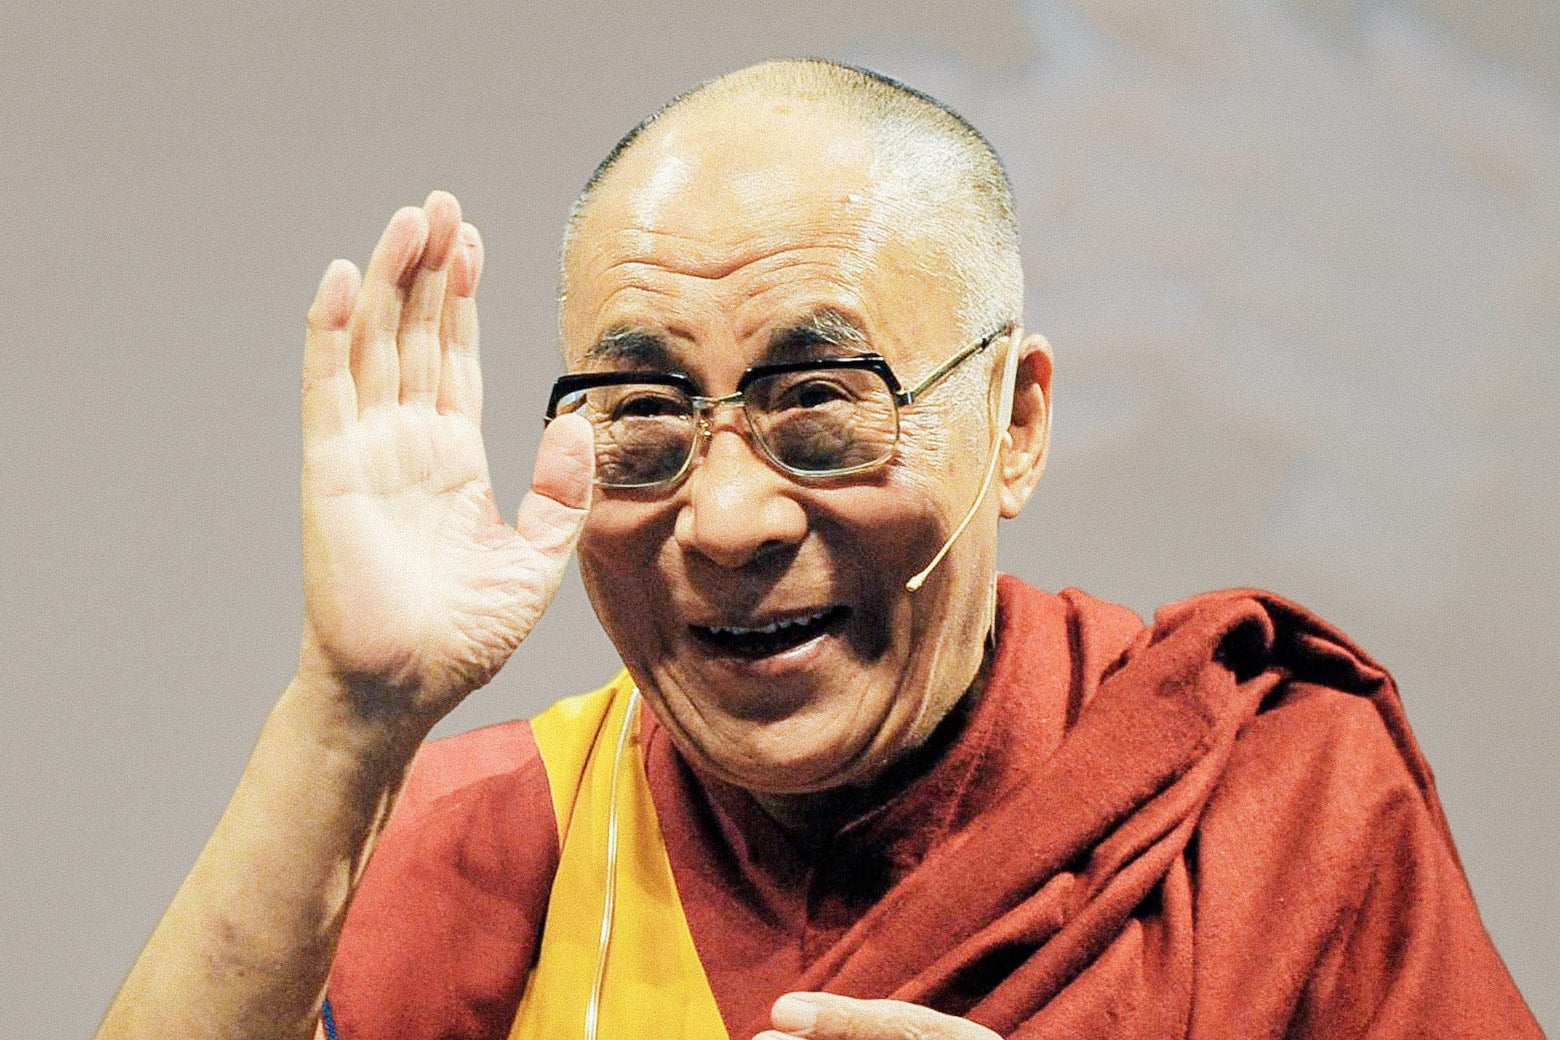 The Dalai Lama waves.